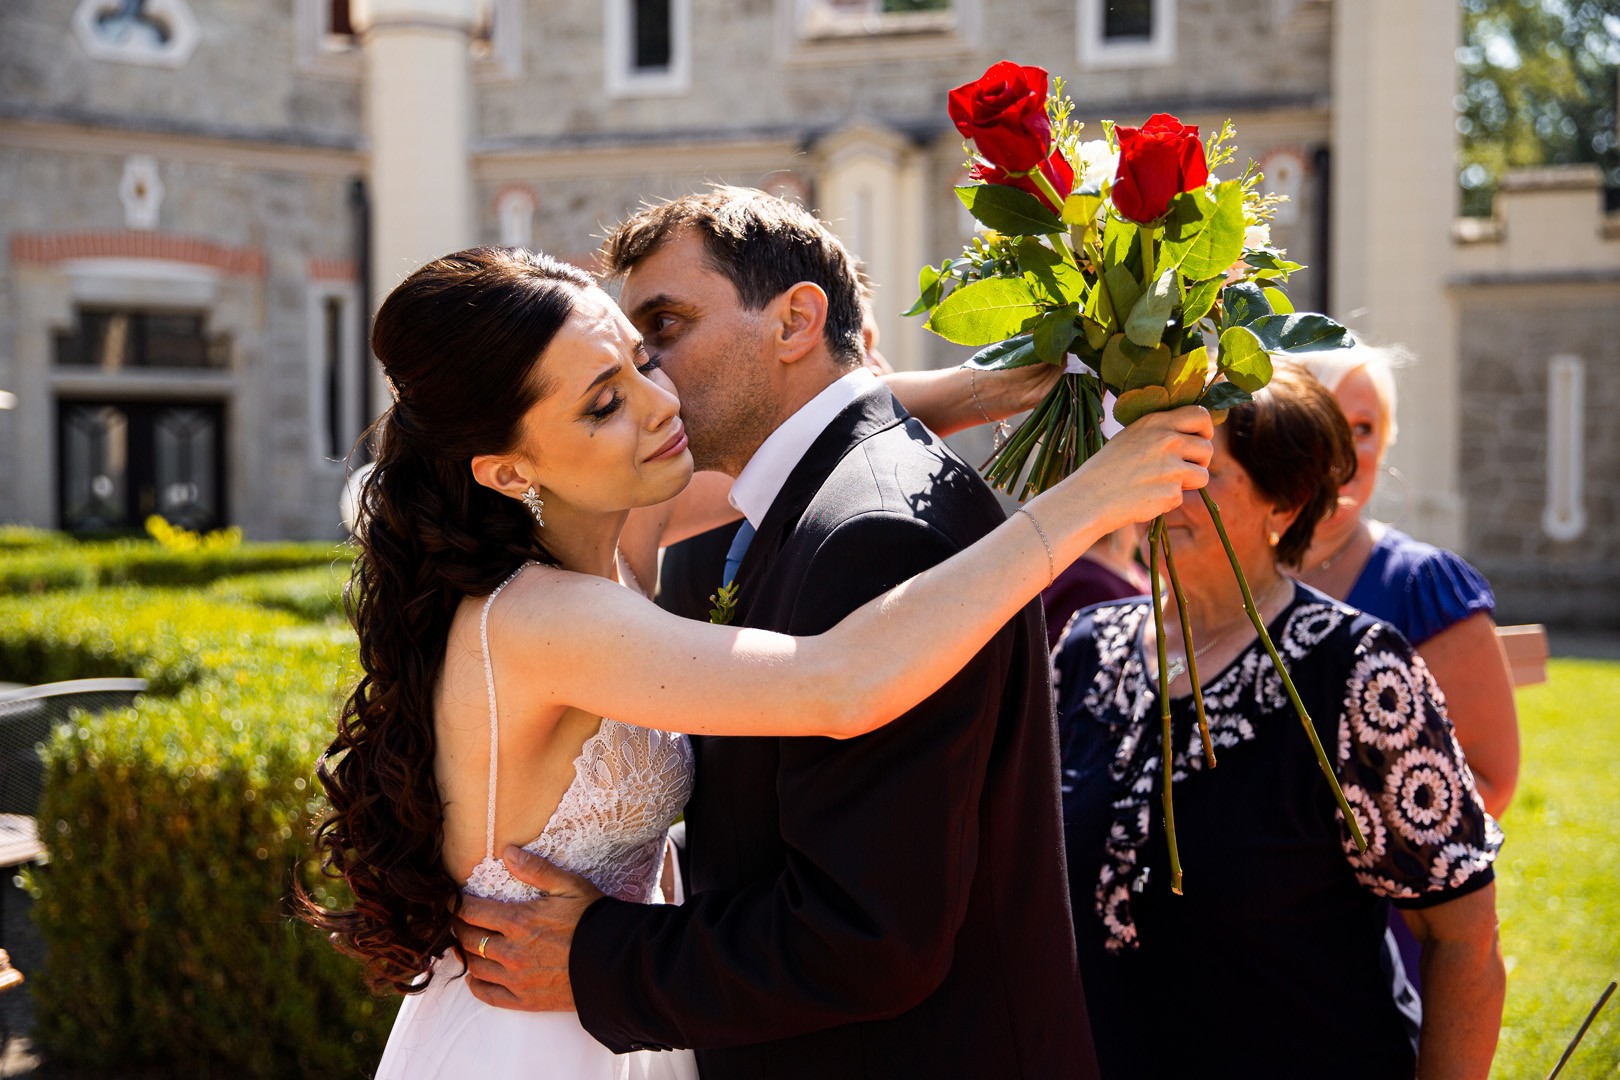 Picturesque dream wedding of Kloudy & Michal in Hluboká nad Vltavou. - 0197.jpg